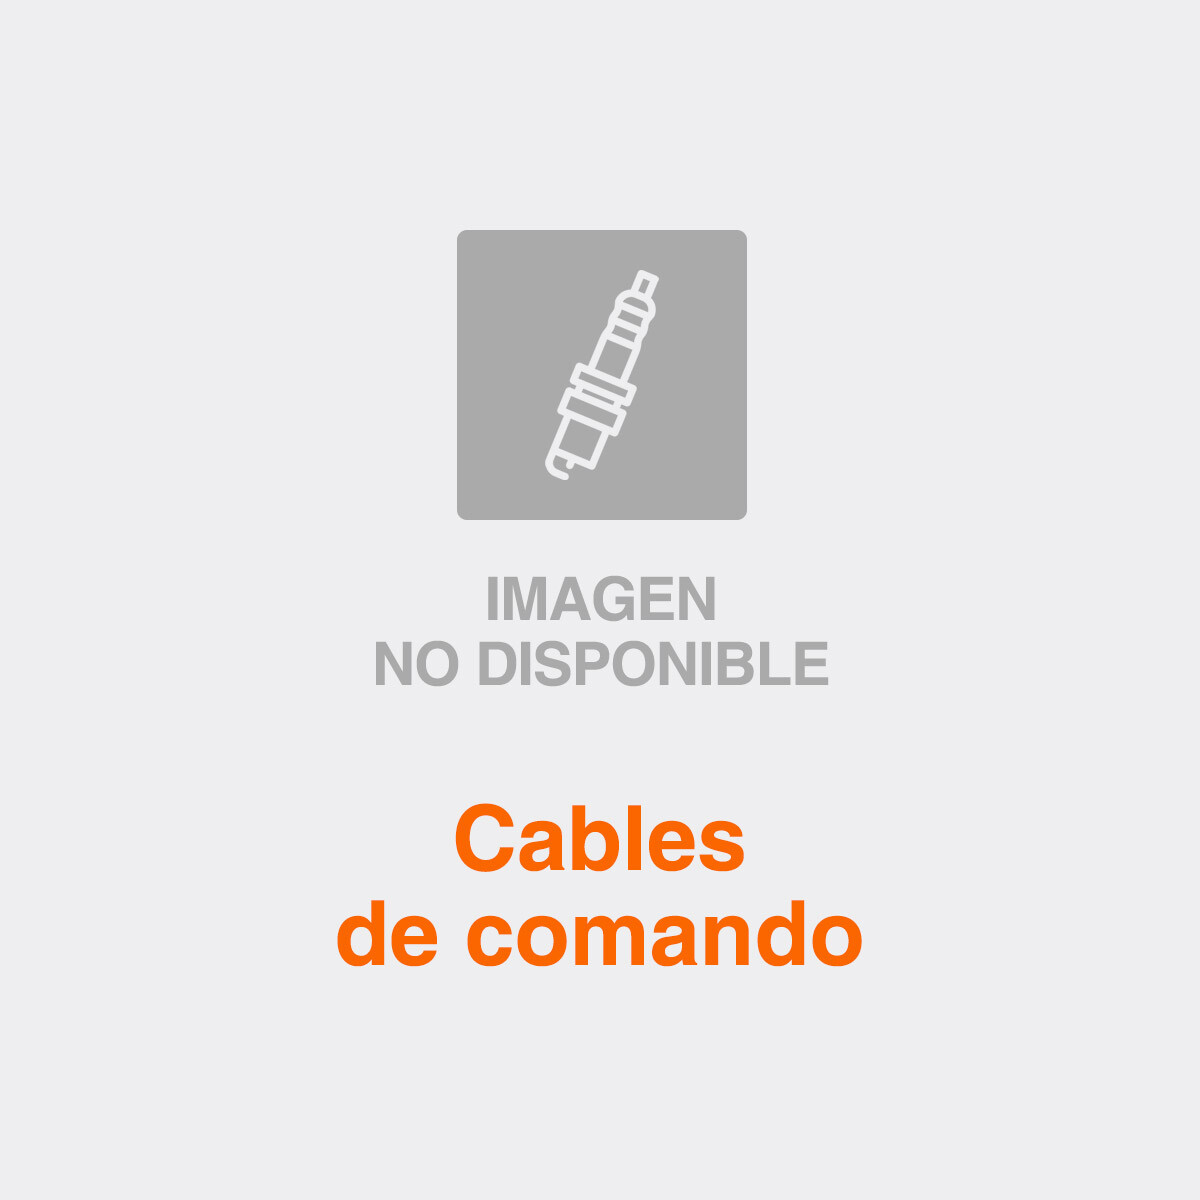 CABLE DE COMANDO DFM DFSK SELECTOR CAMBIOS - 